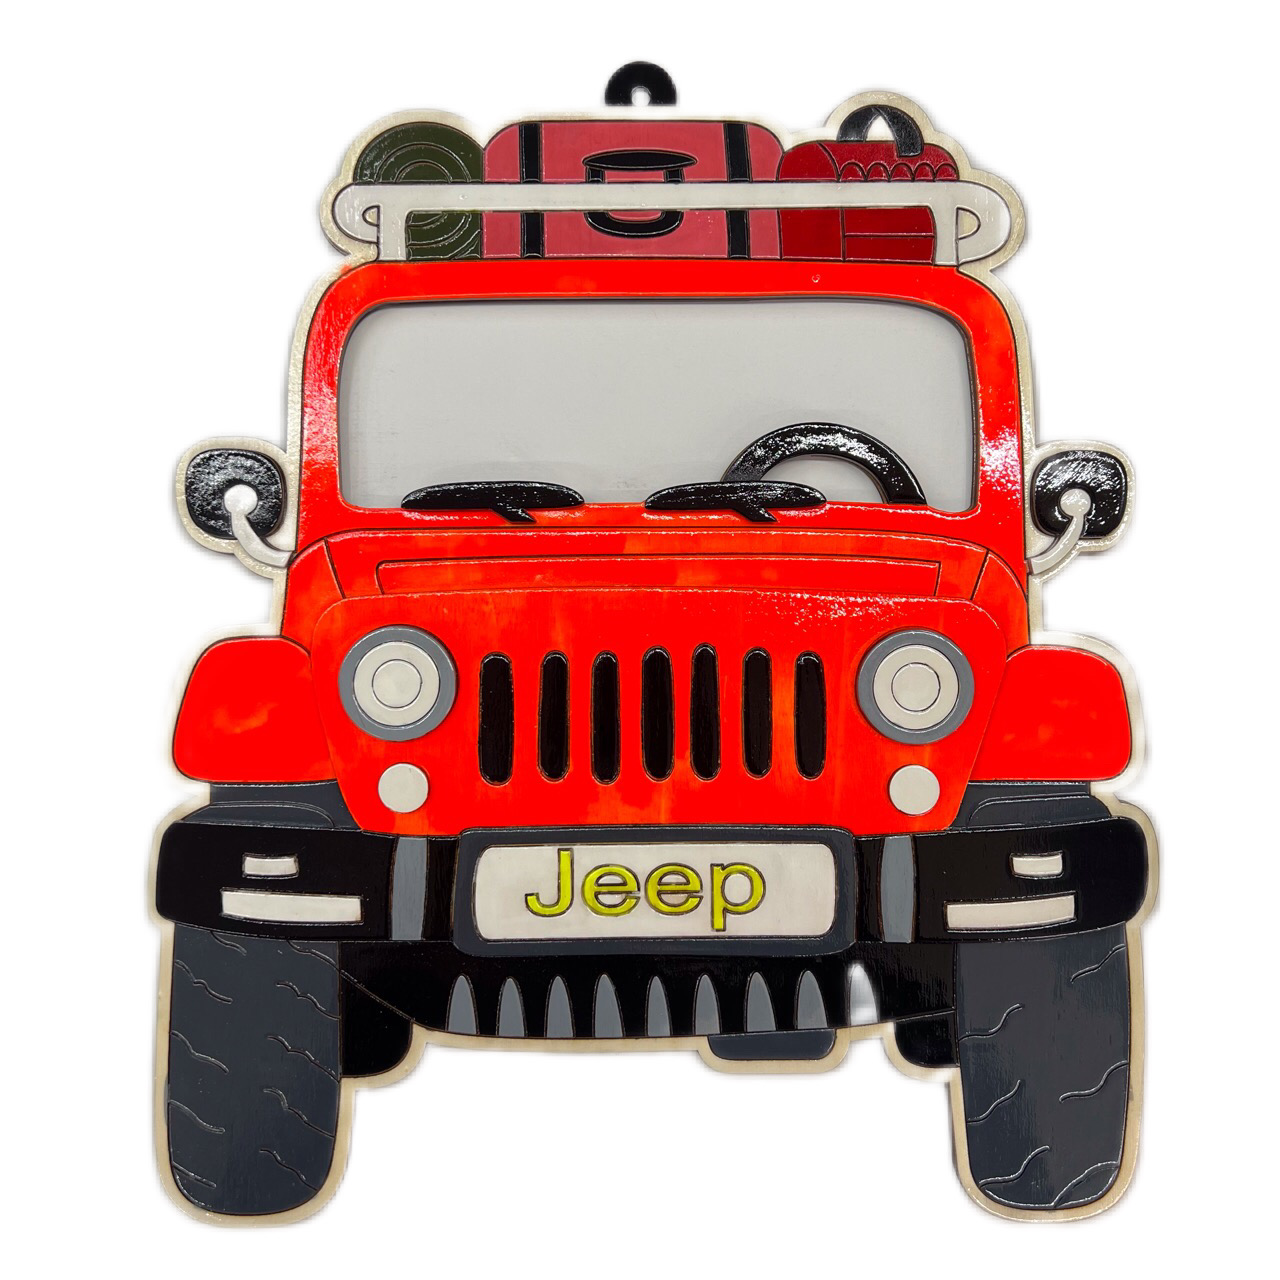 دیوارکوب مدل بلک لایت ماشین jeep کد 012